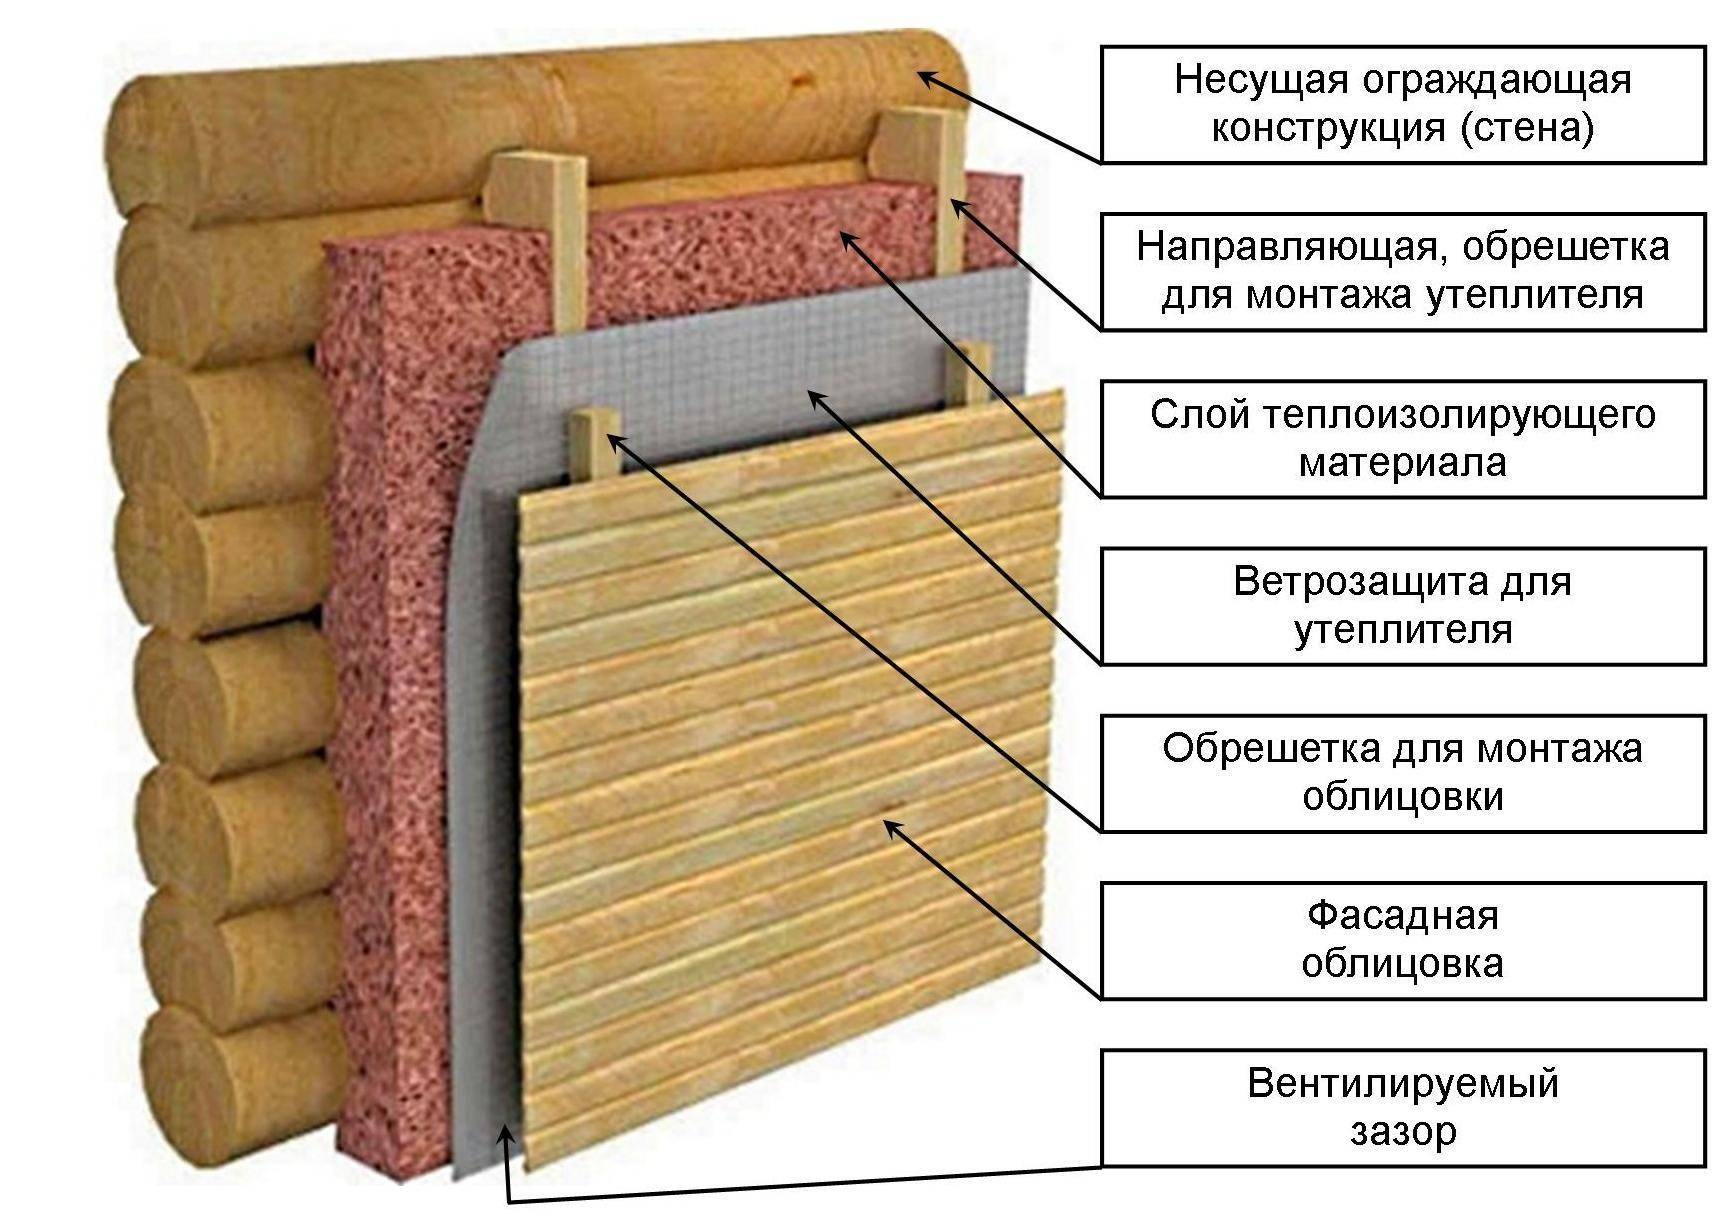 Утепление стен изнутри минватой плюс гипсокартон в деревянном доме